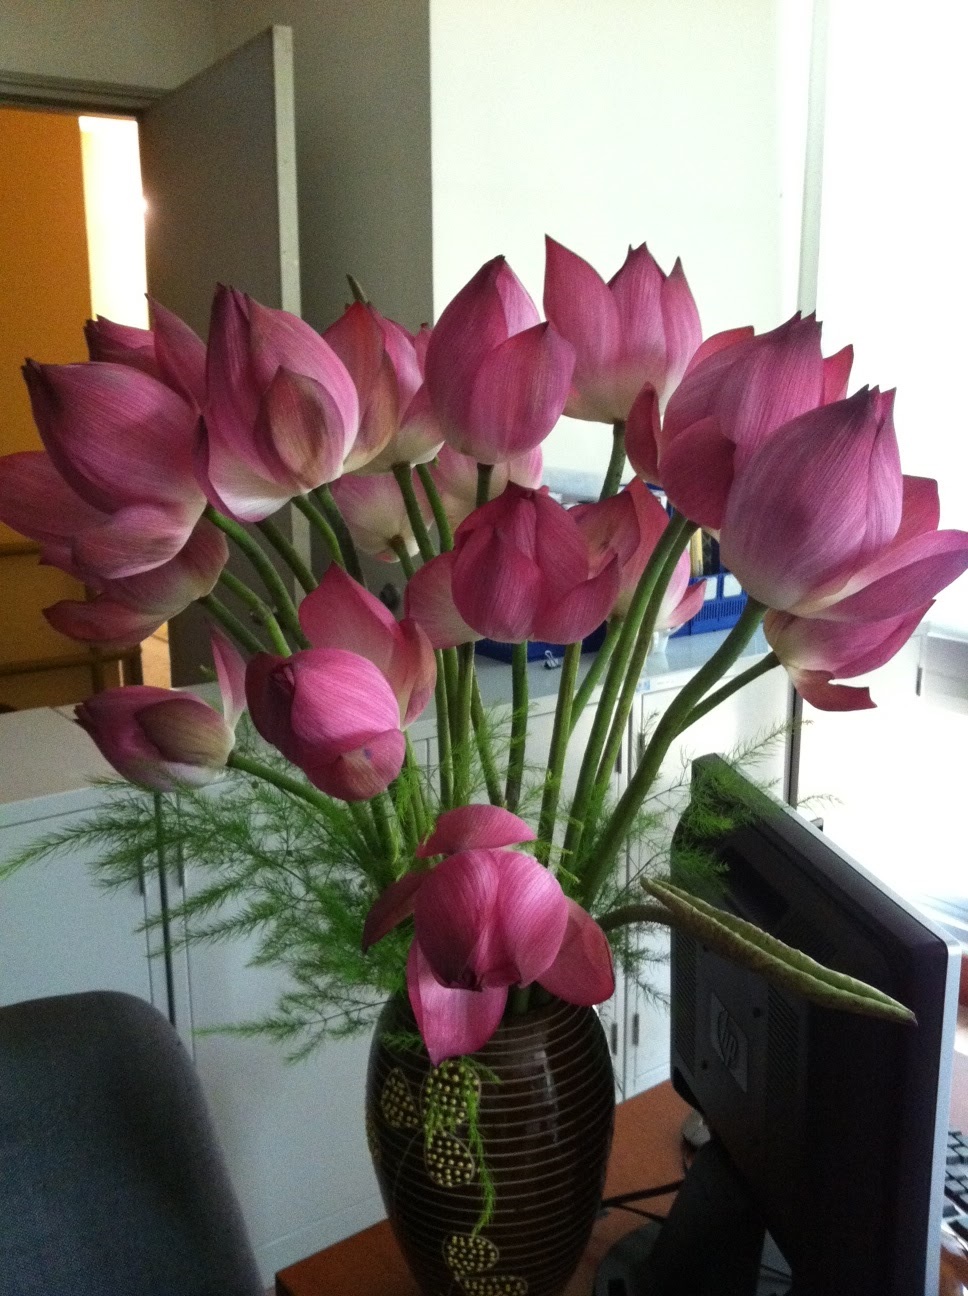 Cắm hoa sen, để bàn, VFO.VN: Bó hoa sen nhỏ xinh sẽ là điểm nhấn cho không gian làm việc của bạn. Với một số mẫu đặc biệt từ VFO.VN, bạn sẽ có thể tự tạo ra một bó hoa sen từ những nhánh sen tươi nhất. Hãy xem ảnh để lấy cảm hứng cho công việc cắm hoa của bạn.